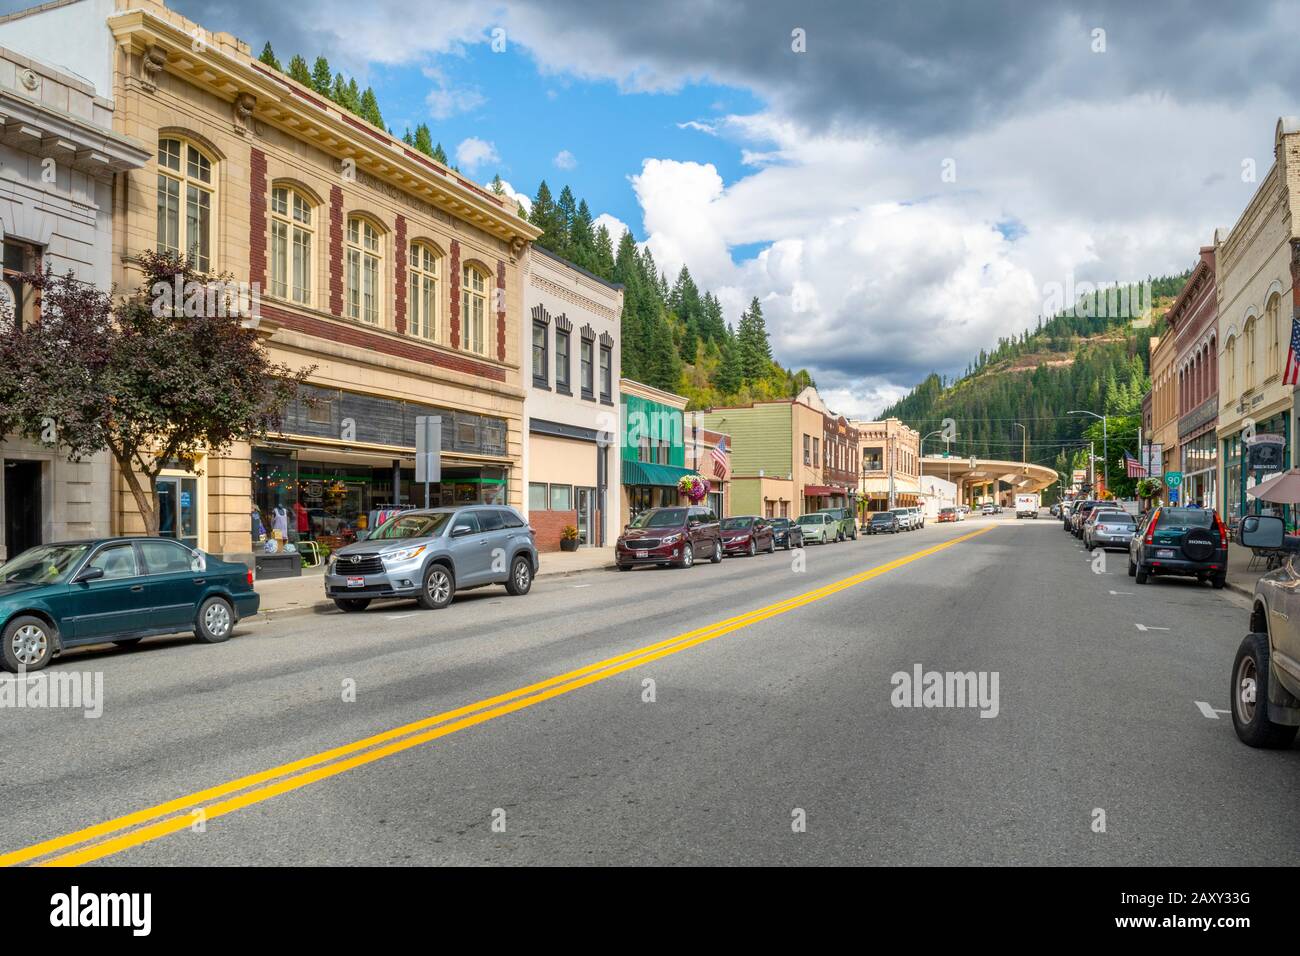 La storica strada principale della città mineraria dell'Old West di Wallace, Idaho, nell'area della Silver Valley nell'entroterra nord-ovest degli Stati Uniti Foto Stock